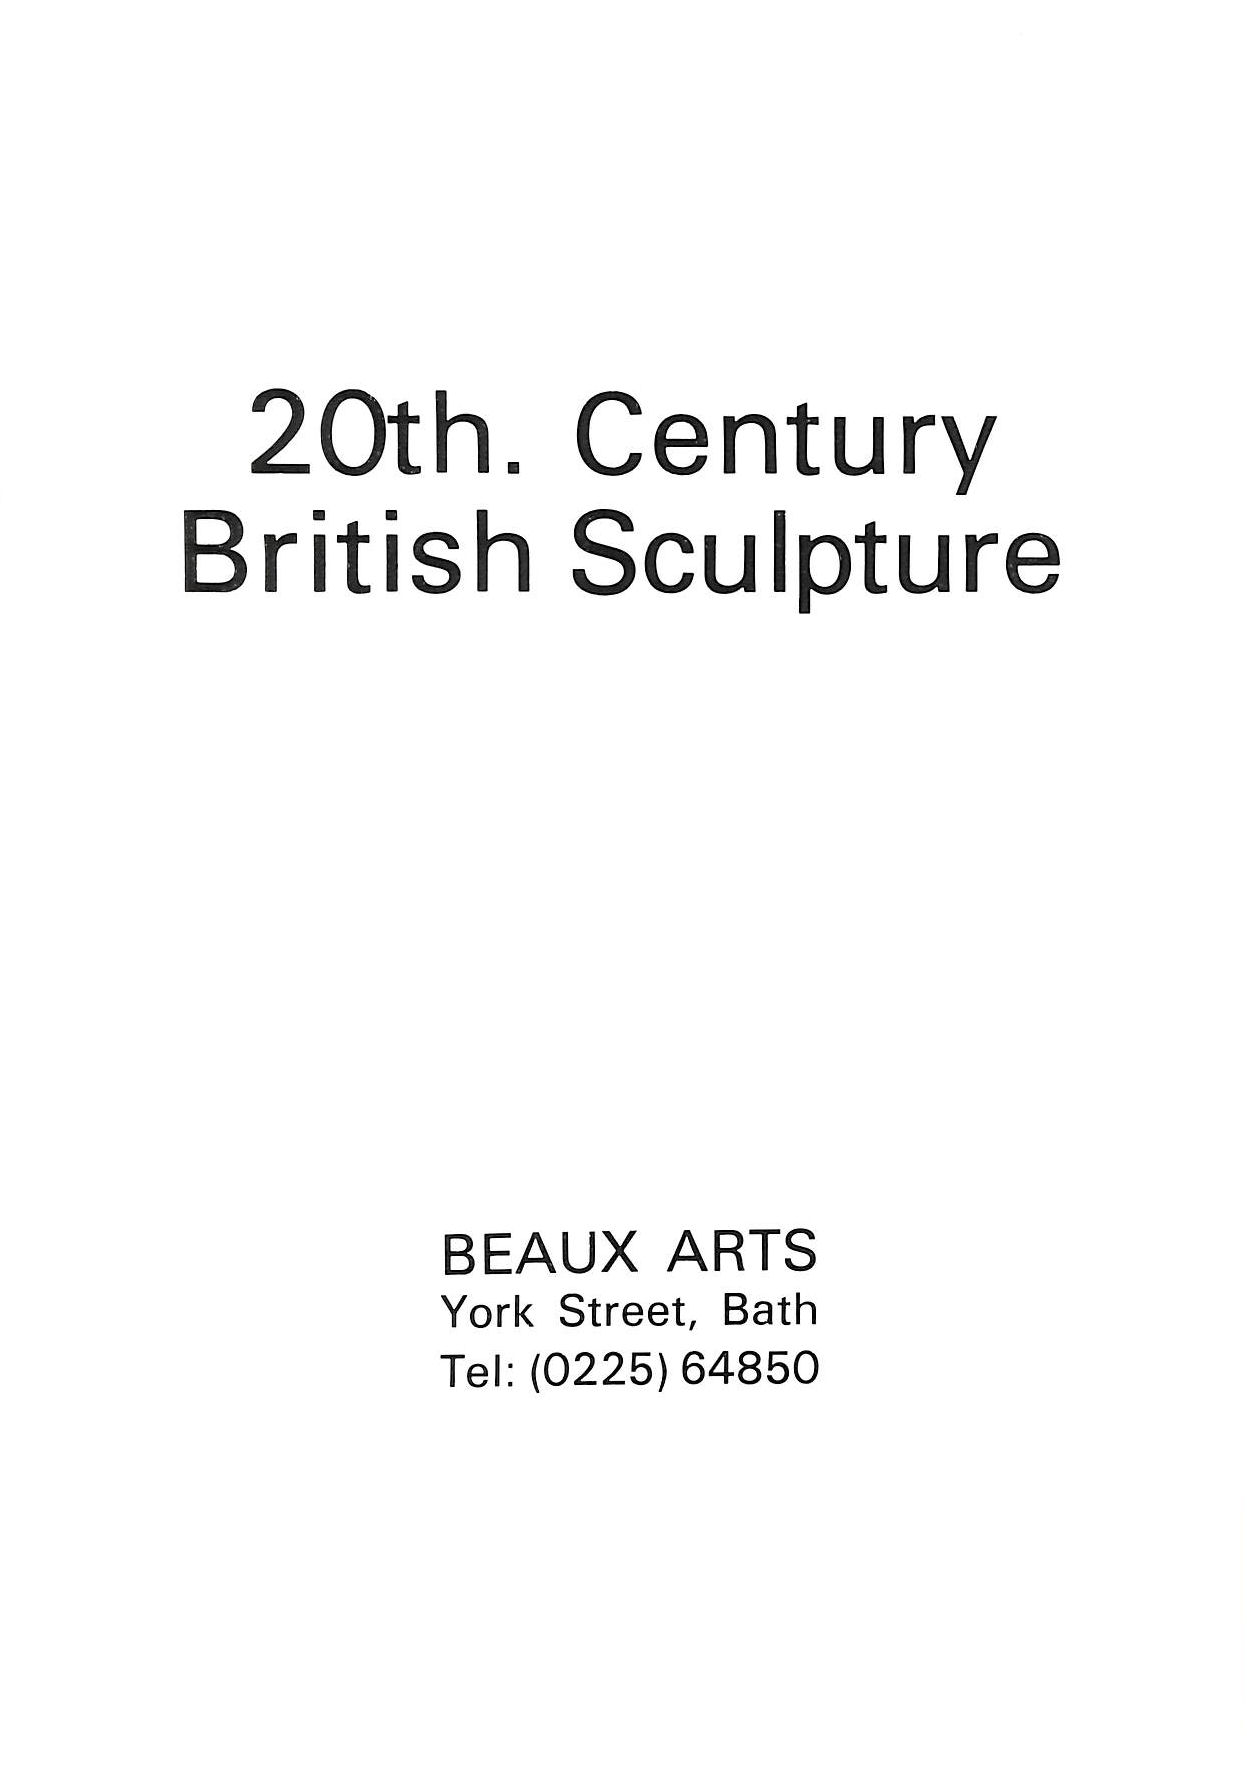 BEAUX ARTS - 20th. Century British Sculpture, Beaux Arts